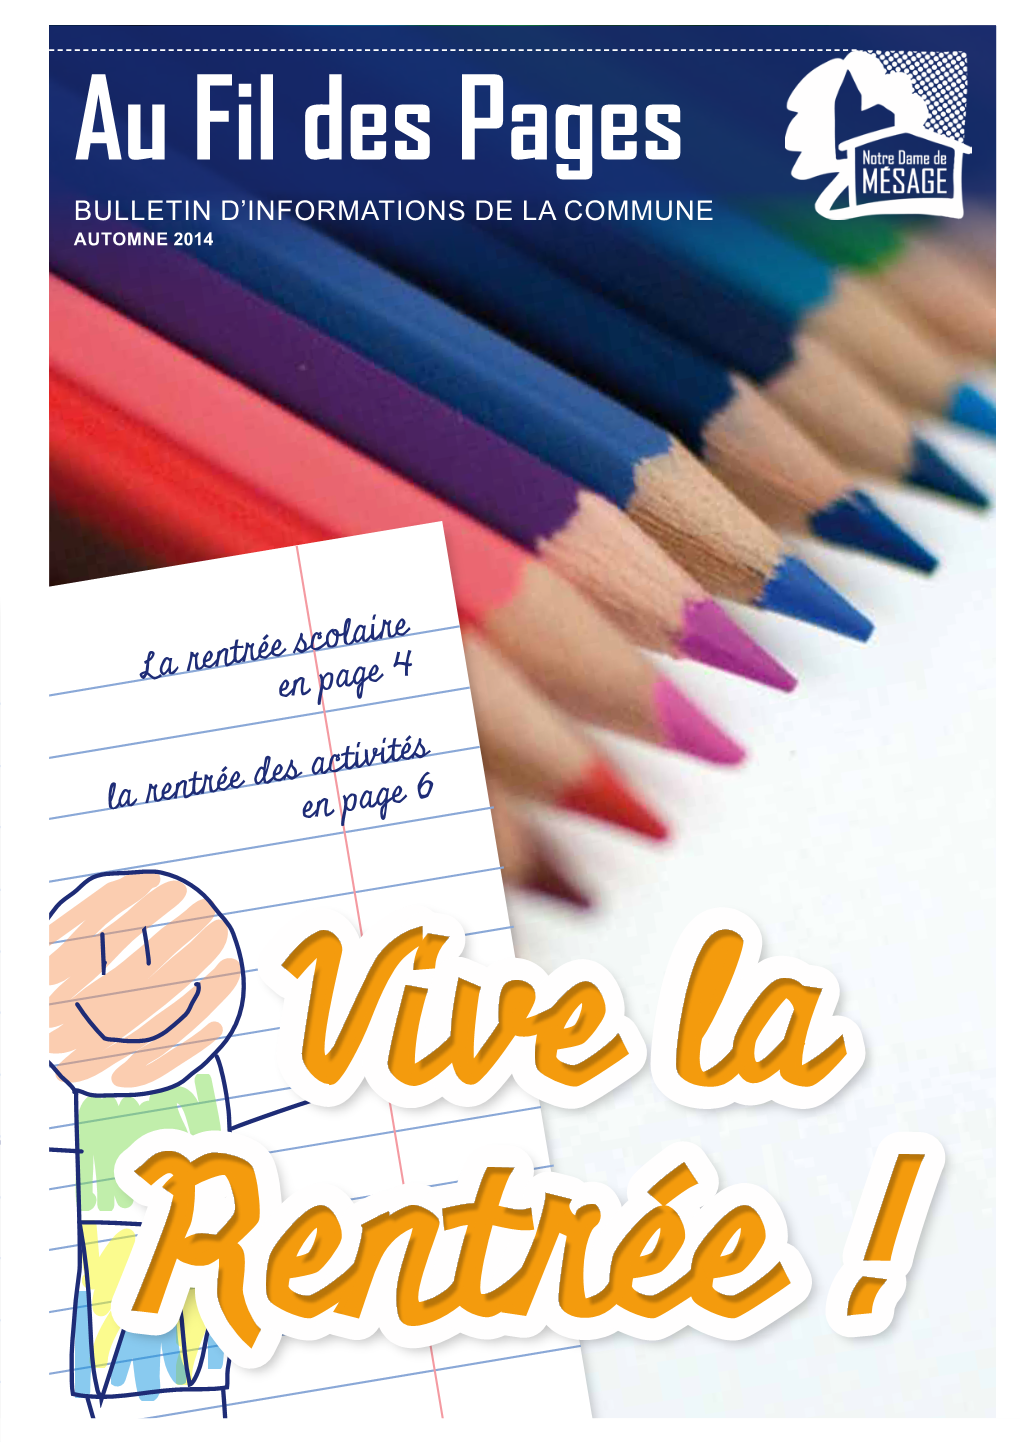 Au Fil Des Pages Bulletin D’Informations De La Commune AUTOMNE 2014